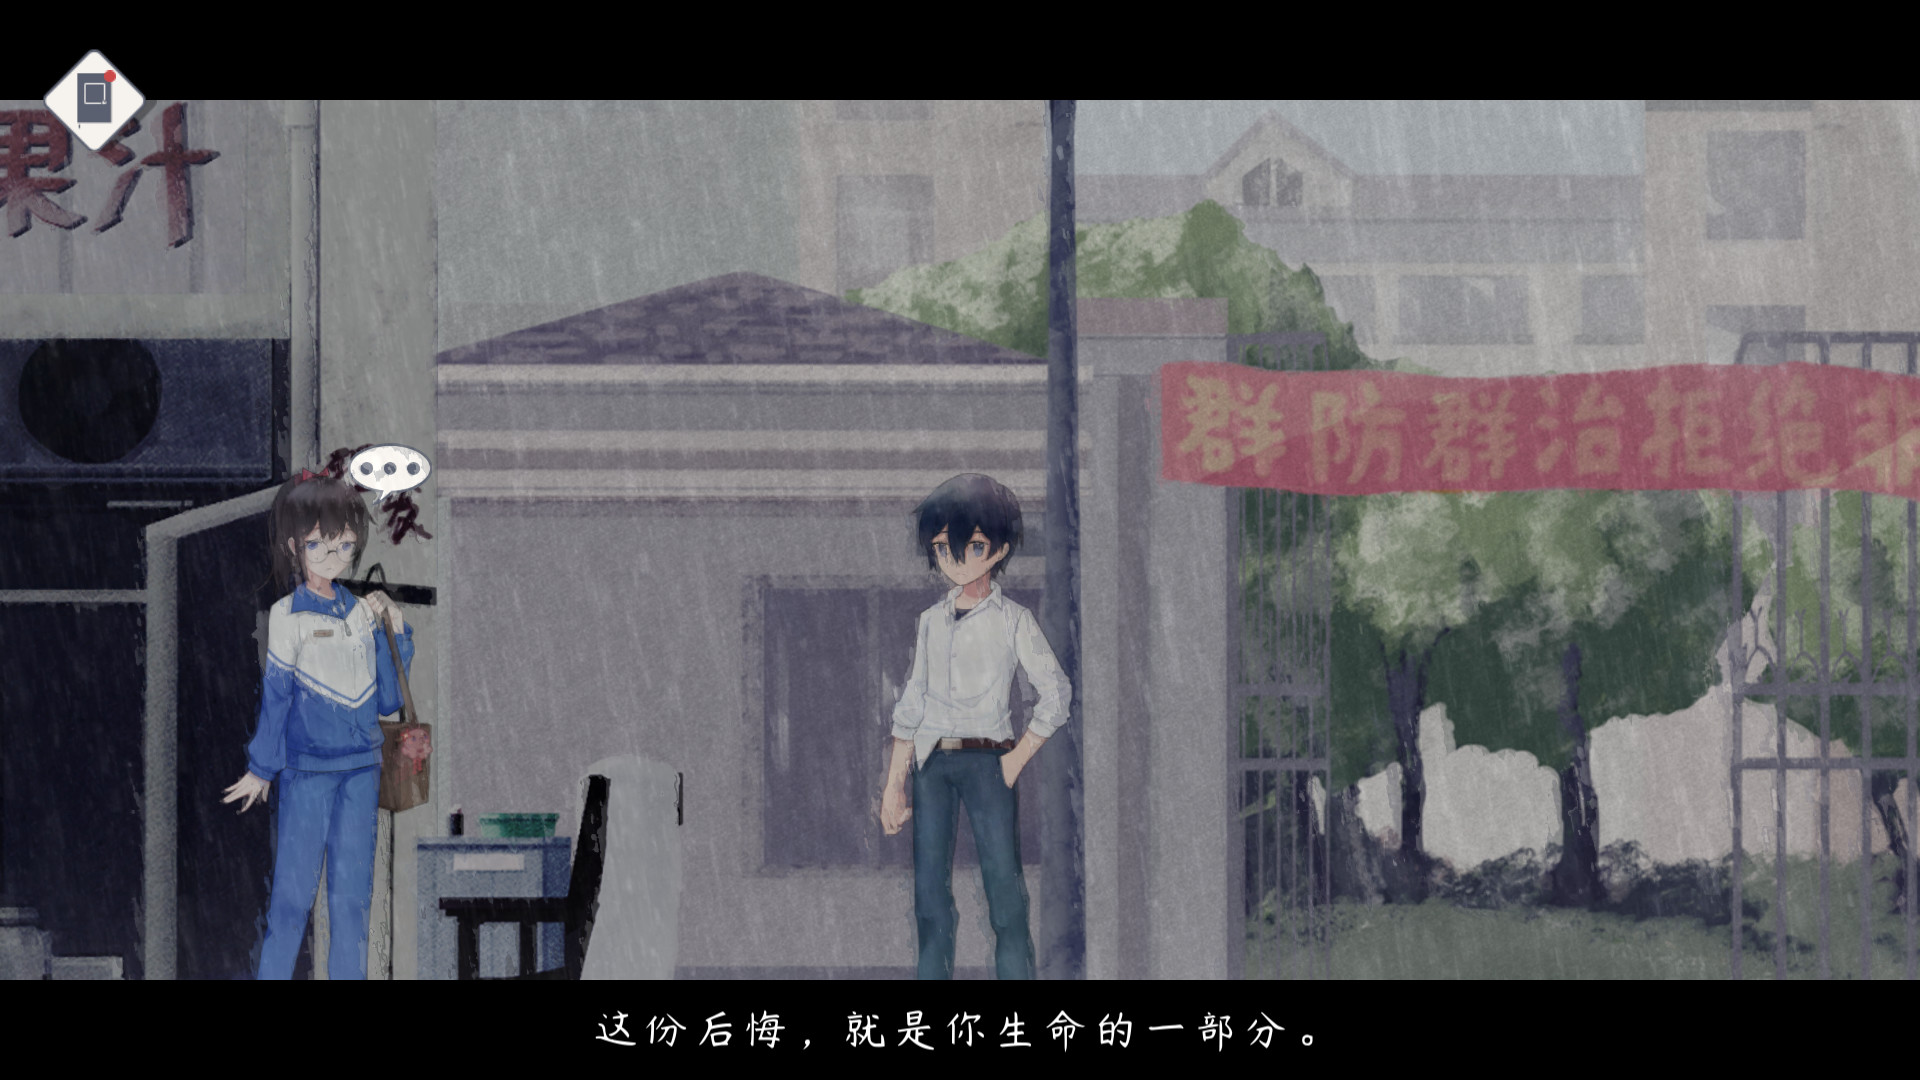 薄暮夏梦(Dream Of Summer Dusk) screenshot